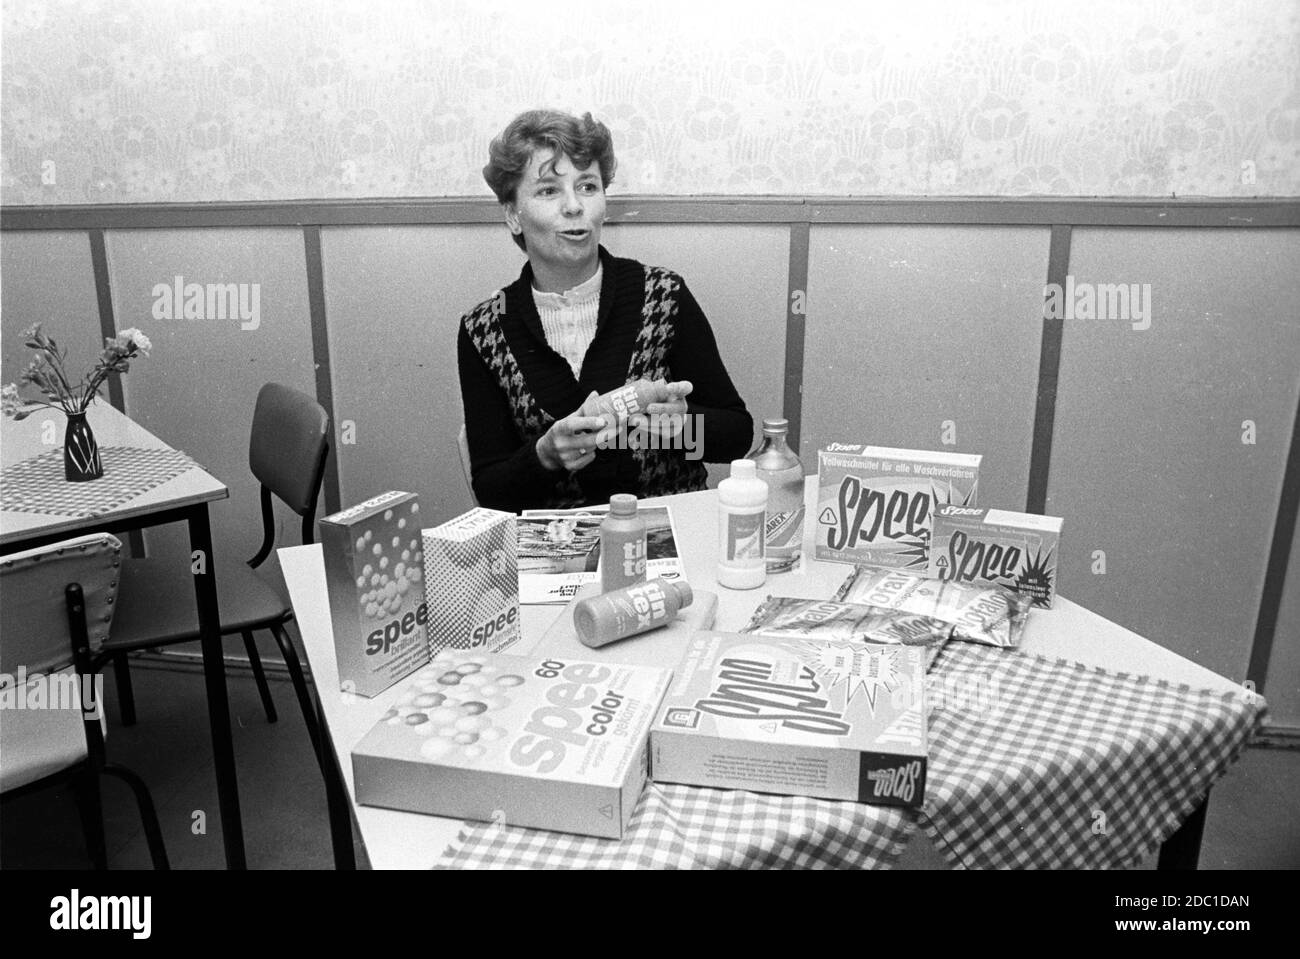 30 novembre 1982, Saxe, Eilenburg: Dans le centre de conseil du DFD, Association démocratique des femmes d'Allemagne, la lessive en poudre de Spee est présentée en plus des conseils pour les mères à l'été 1983. Il a également été possible d'acheter des couches de coton, qui étaient autrement difficiles à obtenir, au cours de tels événements. Date exacte de l'enregistrement inconnue. Photo: Volkmar Heinz/dpa-Zentralbild/ZB Banque D'Images